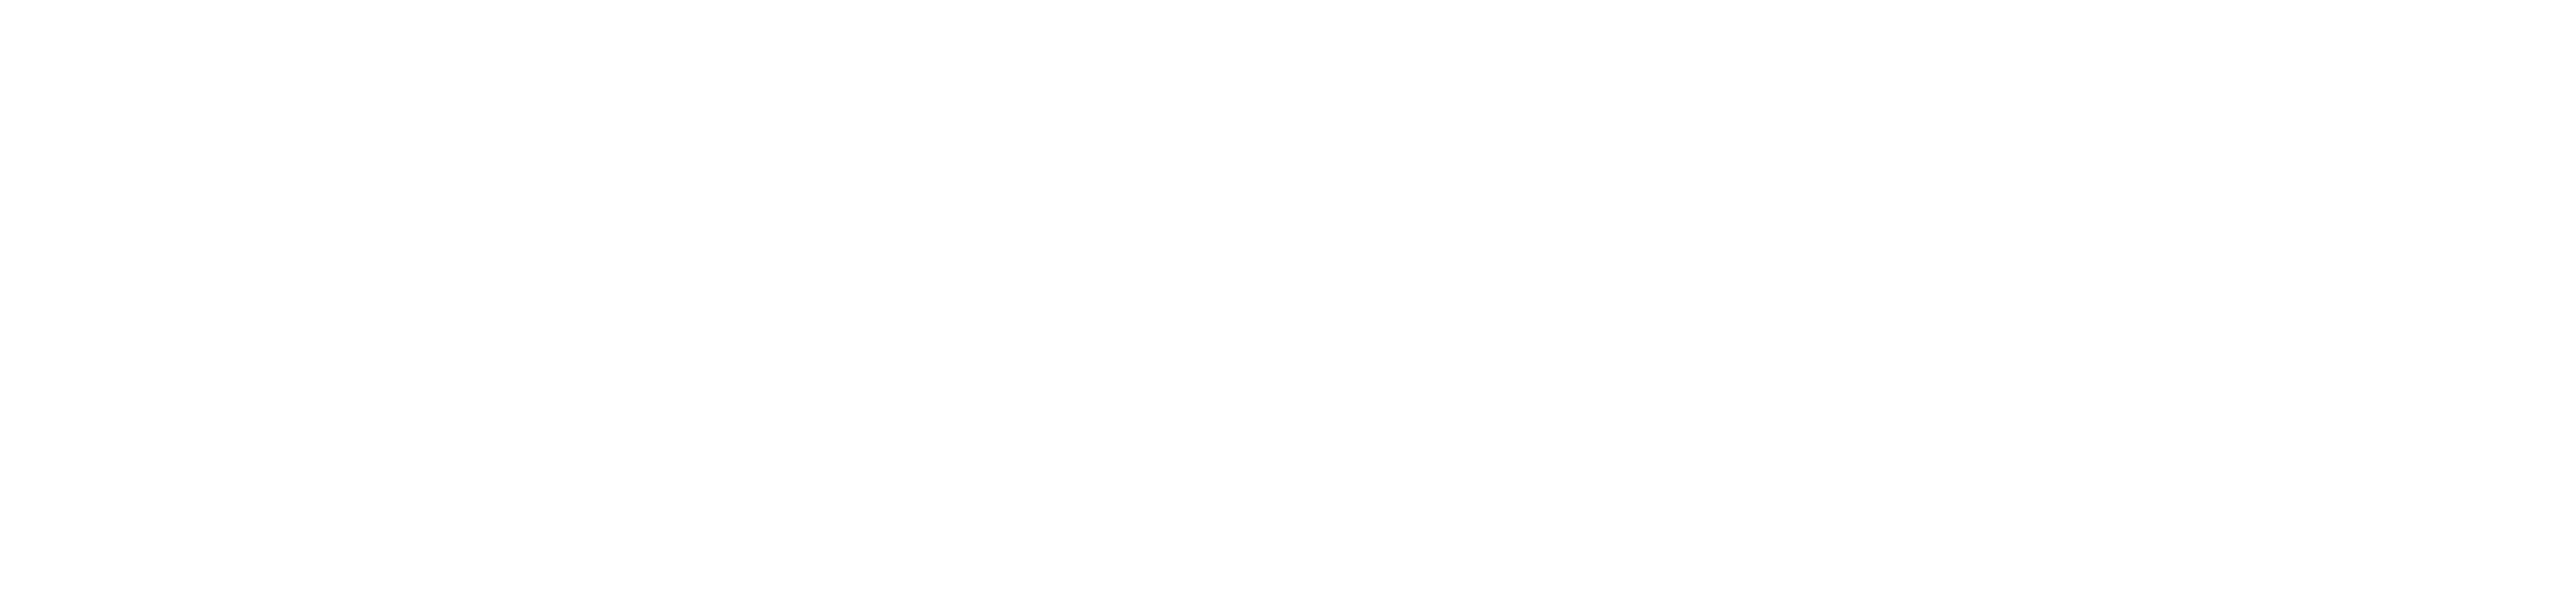 BidMax.com